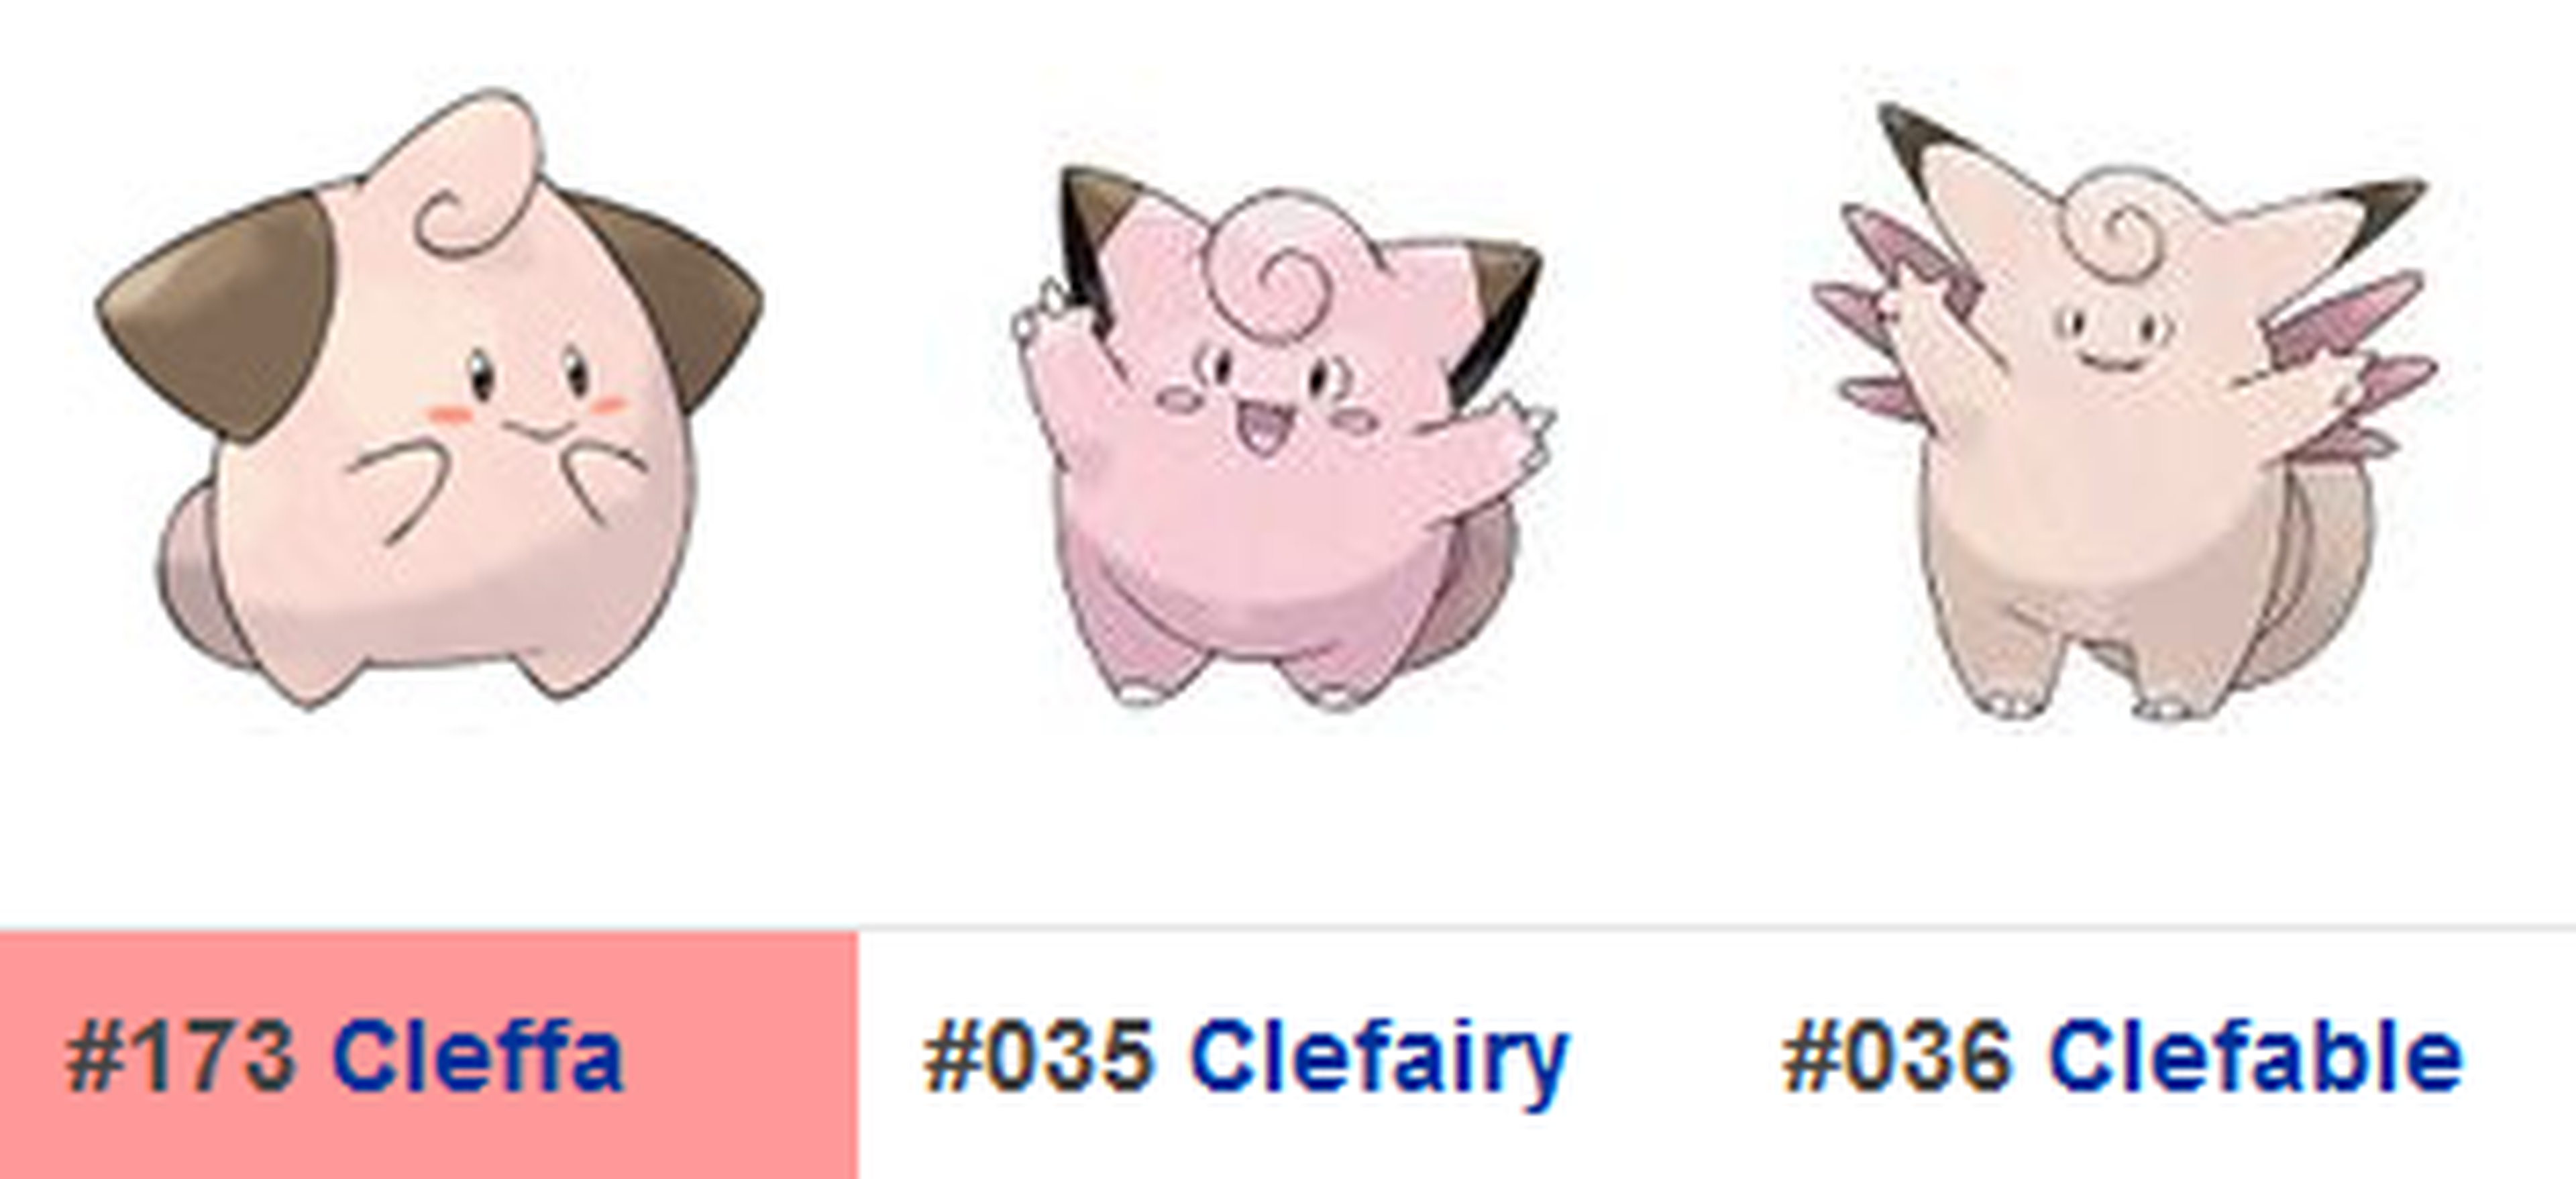 Claffa se incorporaría en la 2ª generación de Pokémon GO